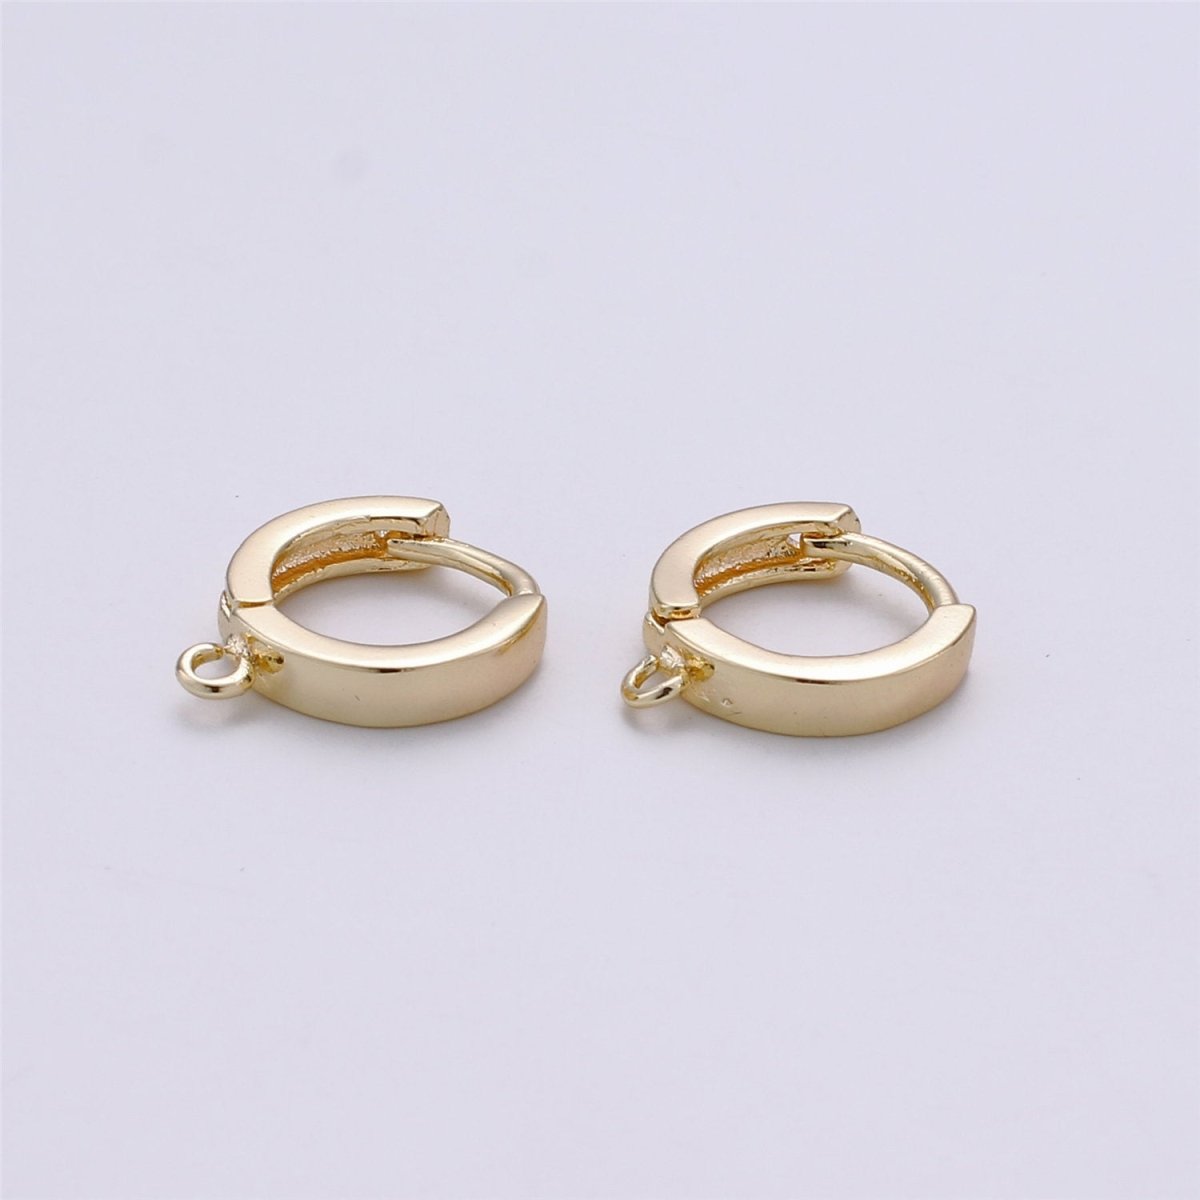 Vermeil Gold Earring Findings - Open Link earring Post, 14k yellow gold over 925 sterling silver 10mm huggie hoop earring K-519 - DLUXCA